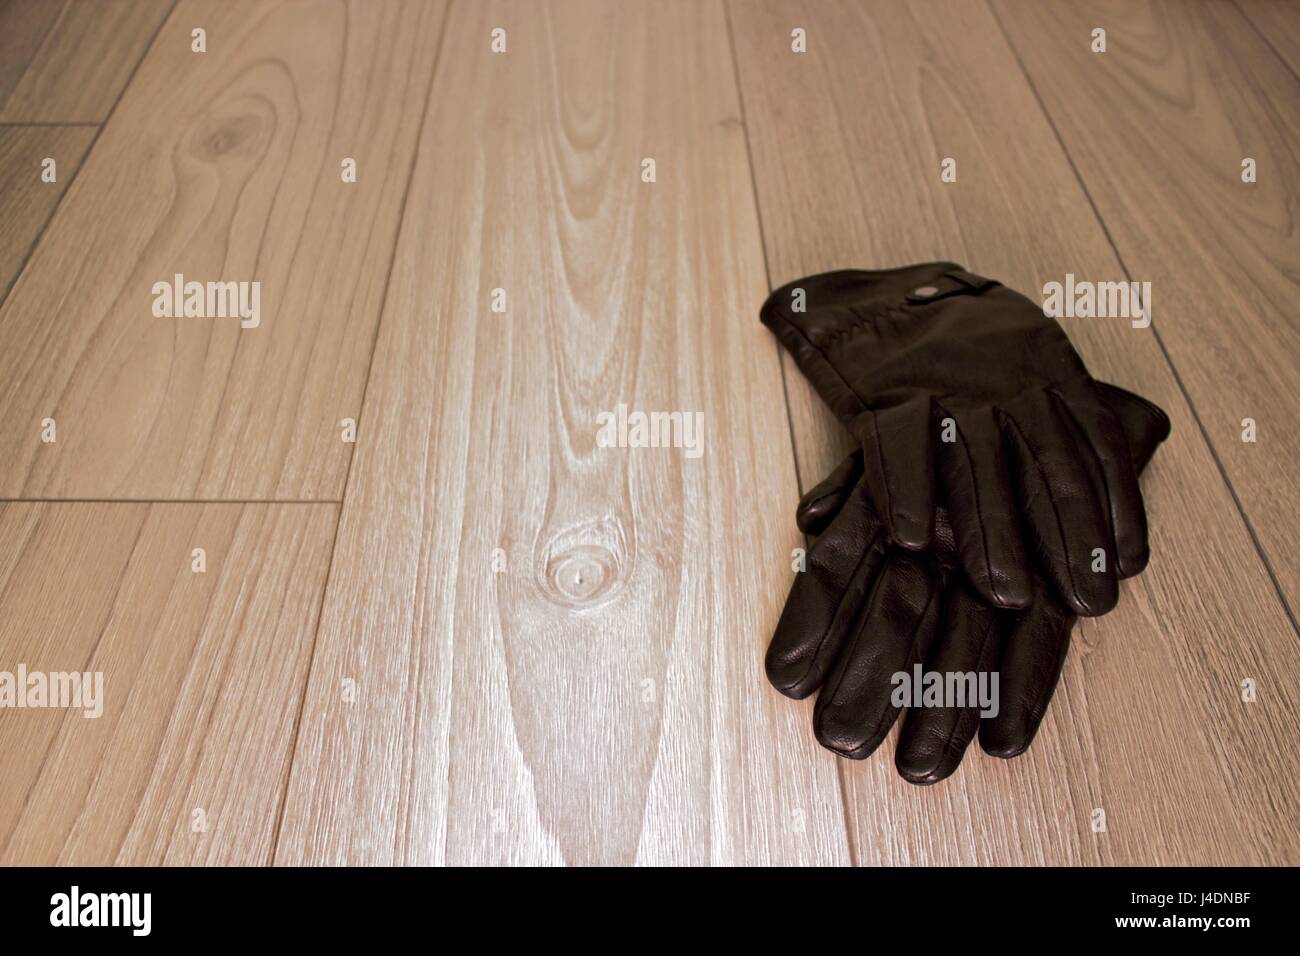 Paio di guanti sul pavimento in legno Foto Stock